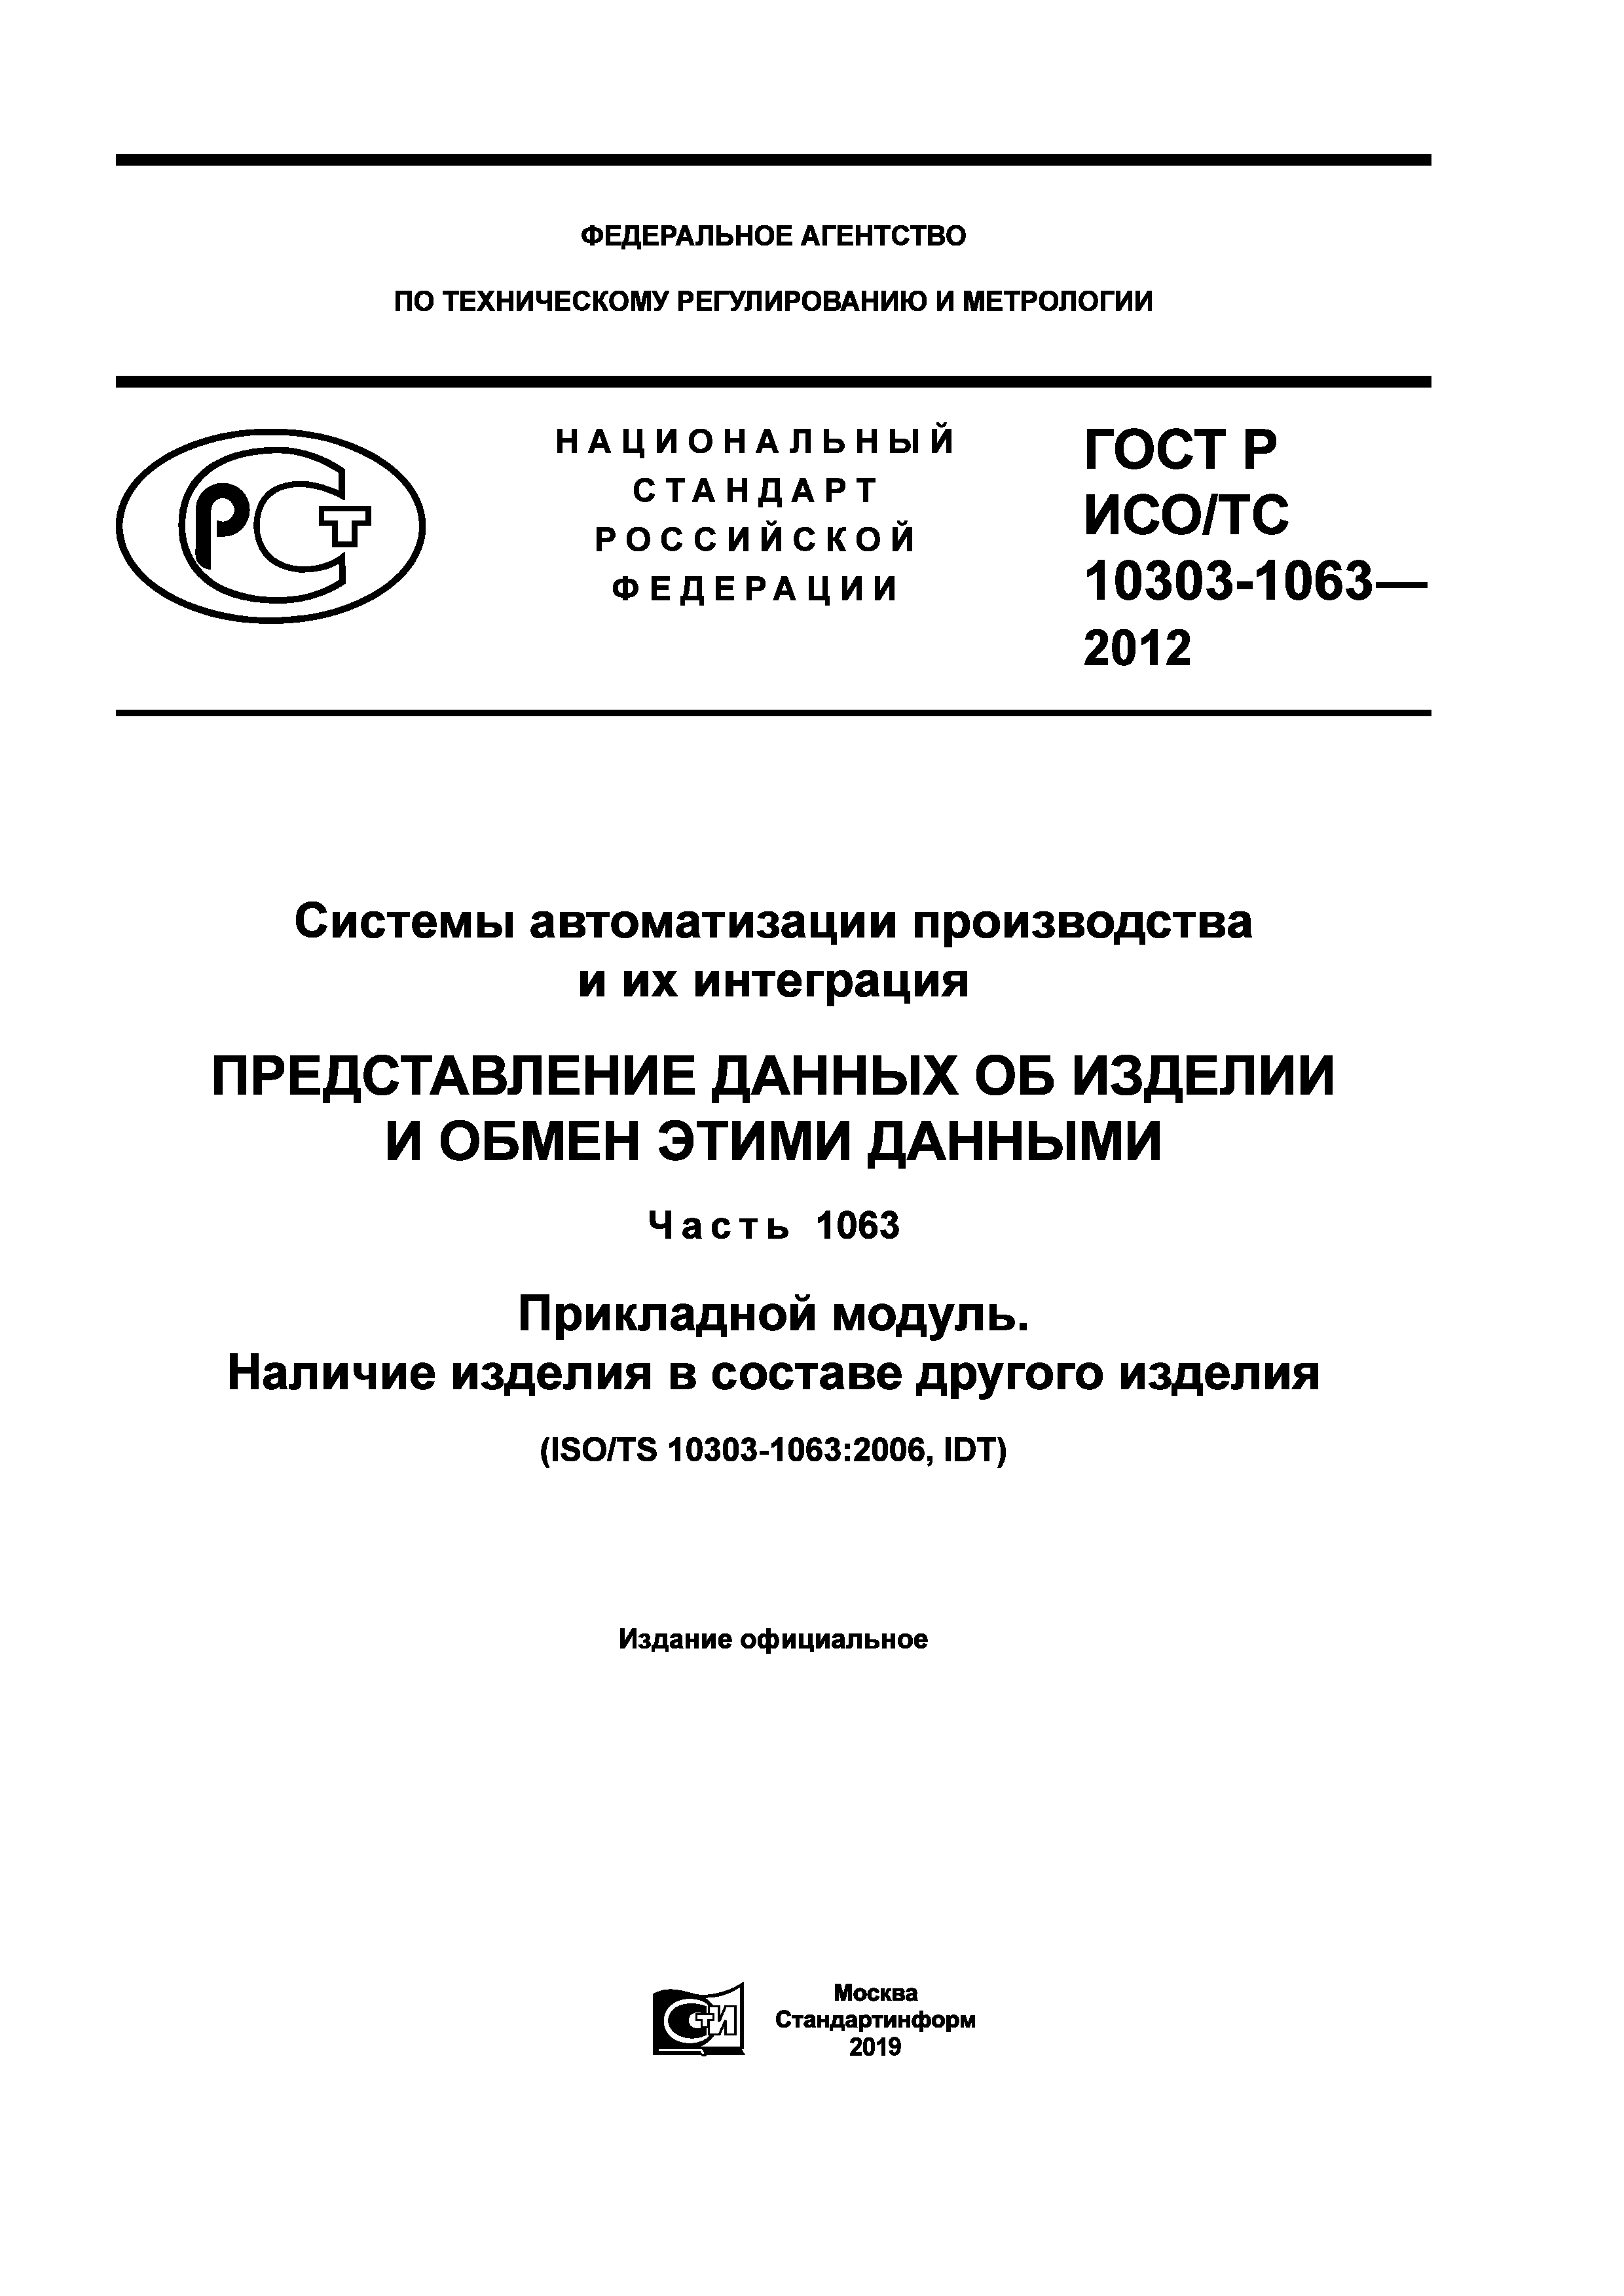 ГОСТ Р ИСО/ТС 10303-1063-2012